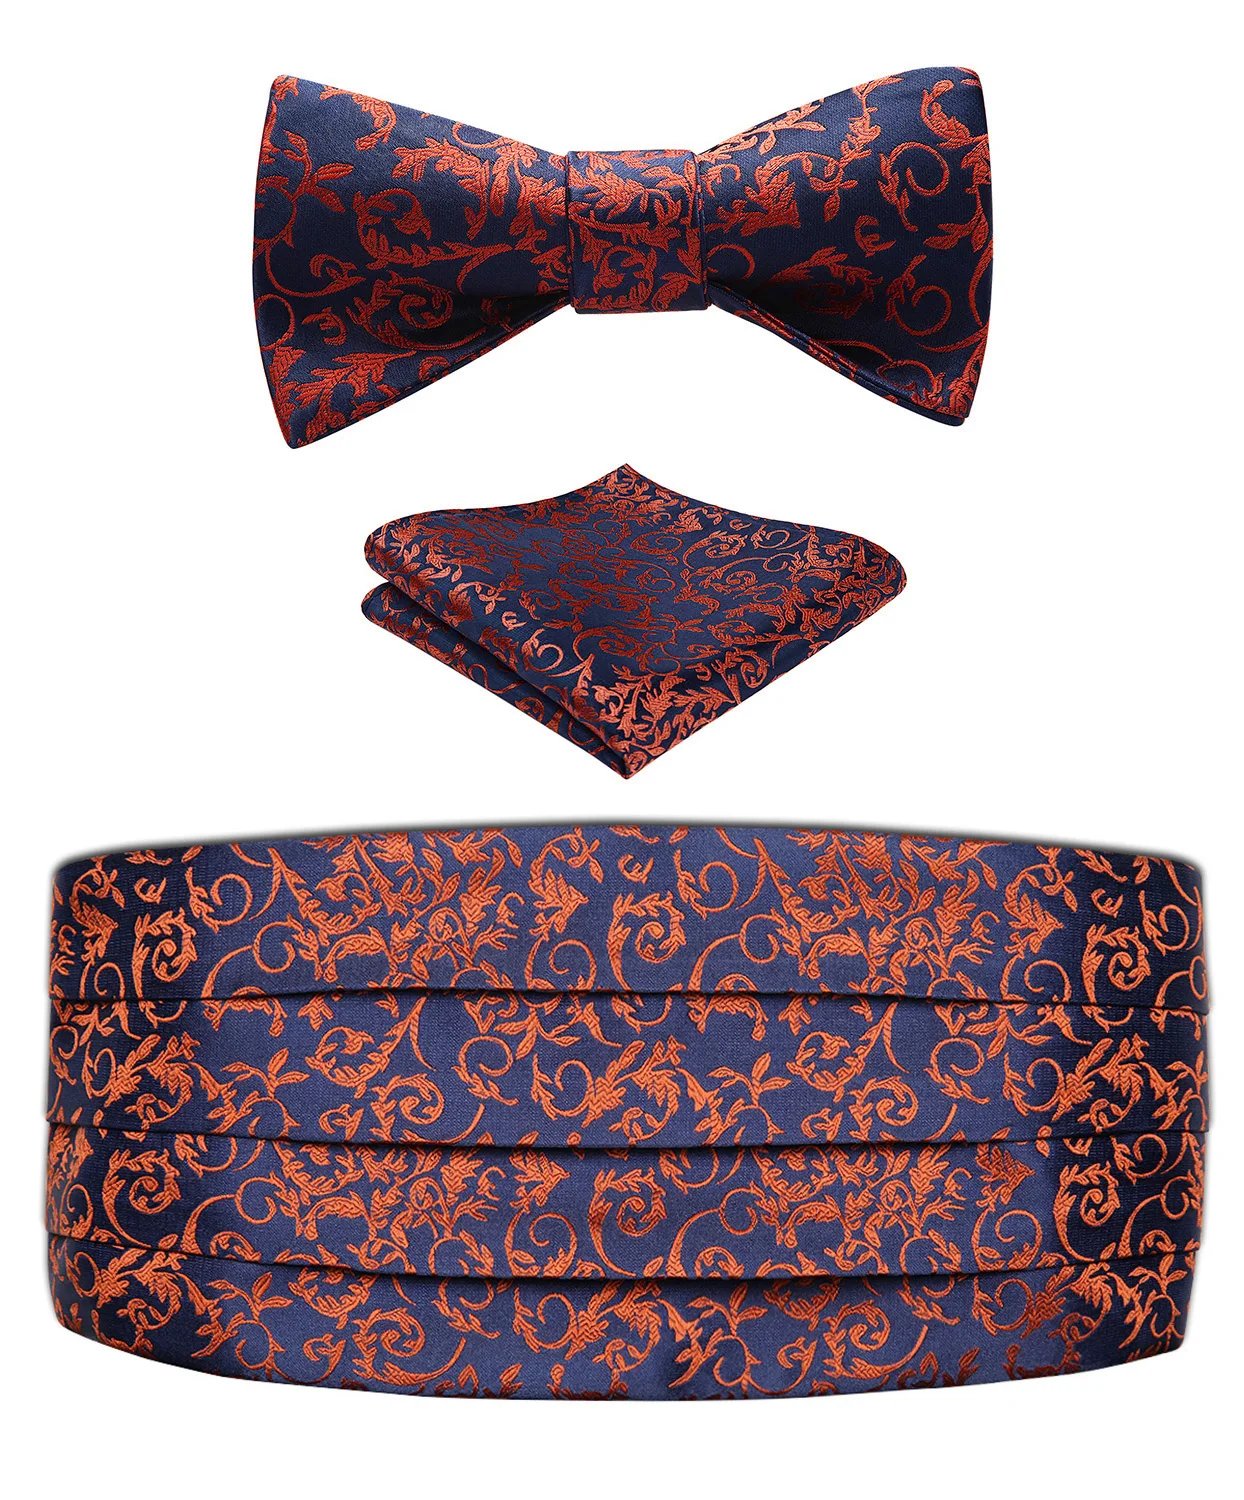  Classic Men's Floral Paisley Cummerbund & Pocket square& Various Fashion Patterns Bow tie Set